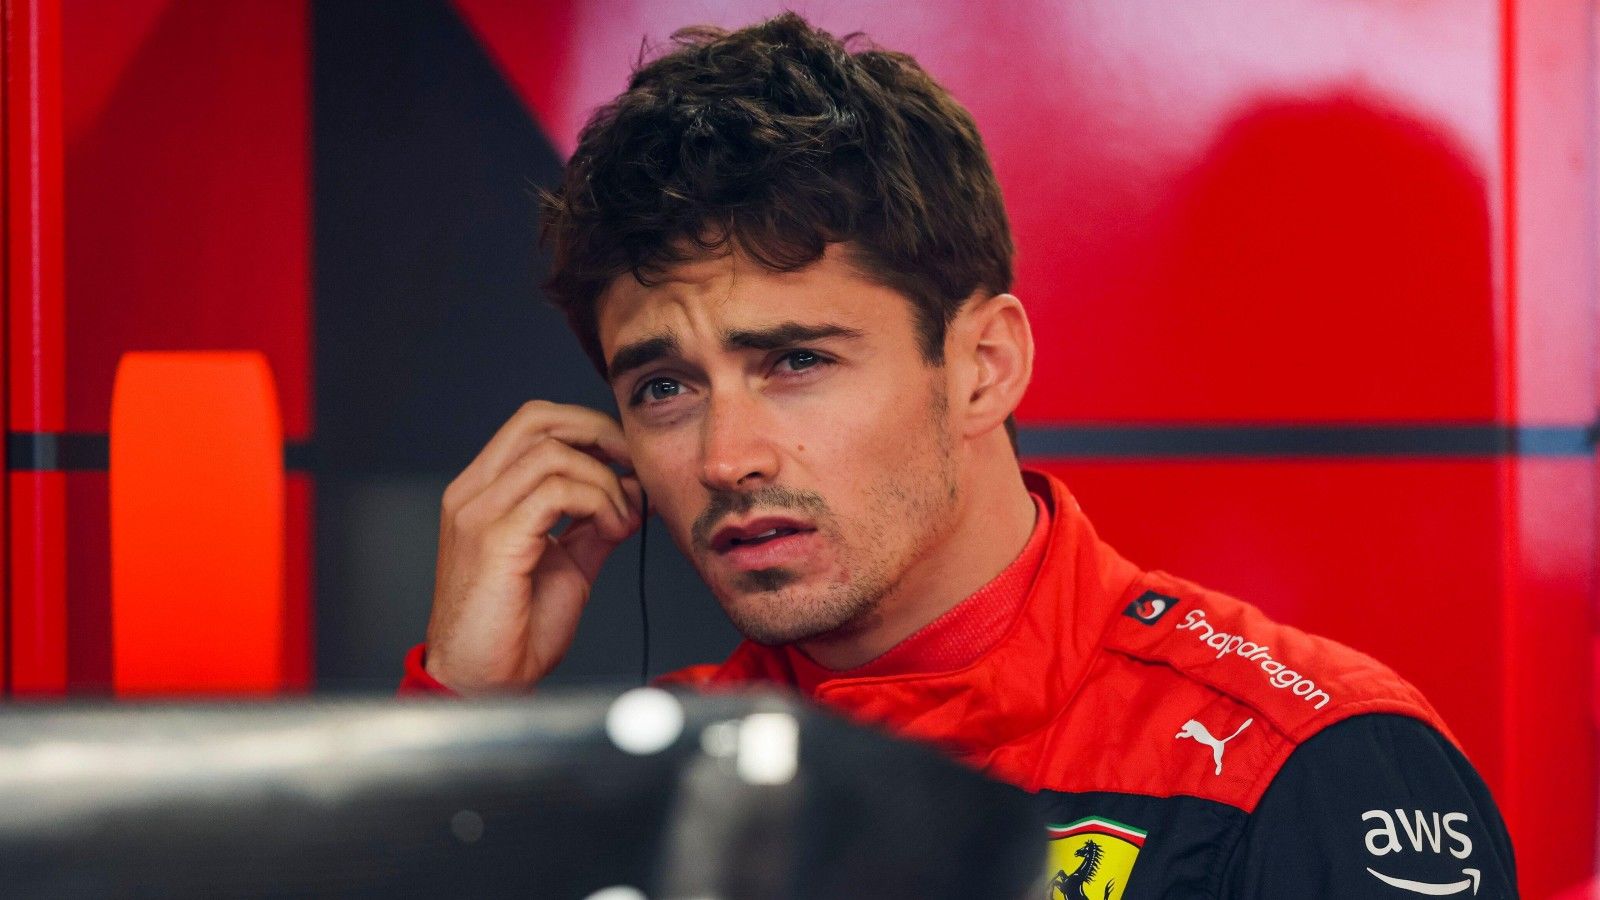 Charles Leclerc de la F1 confesó estar teniendo su peor temporada